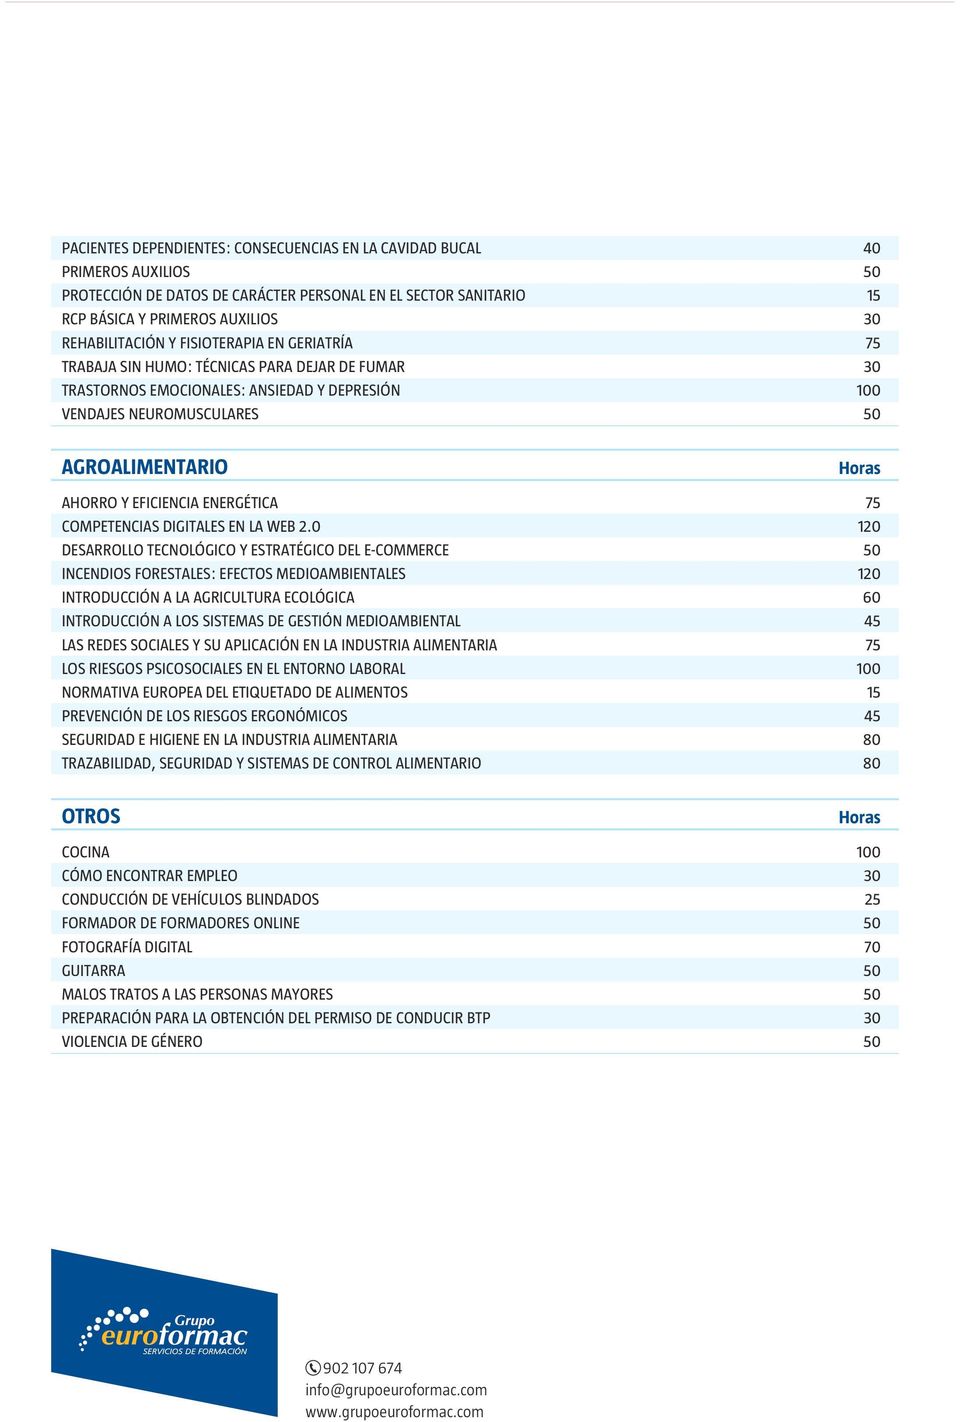 ENERGÉTICA 75 COMPETENCIAS DIGITALES EN LA WEB 2.